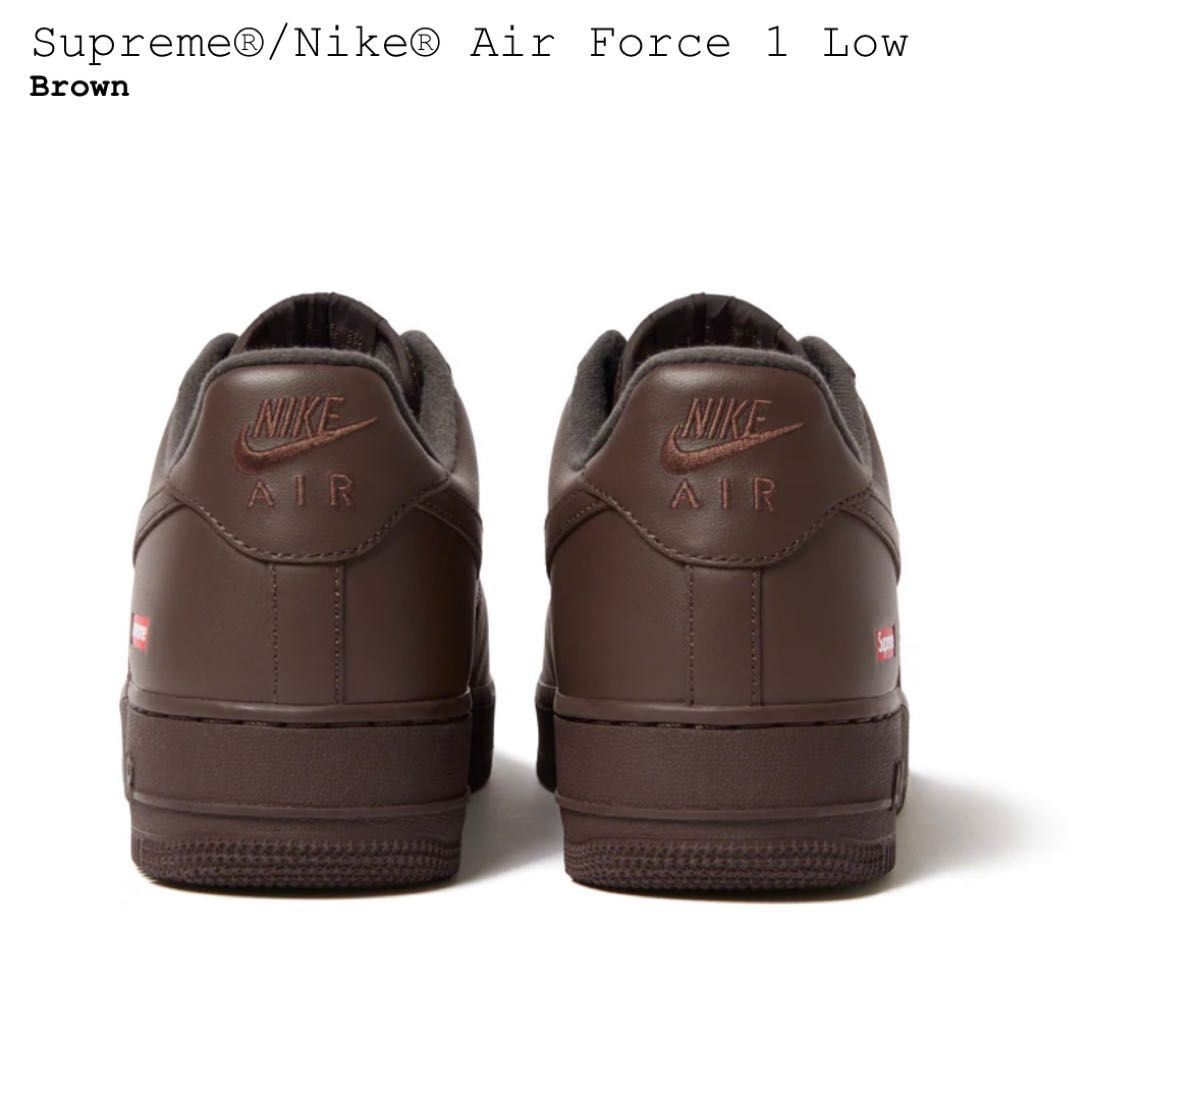 Supreme × Nike Air Force 1 Low 